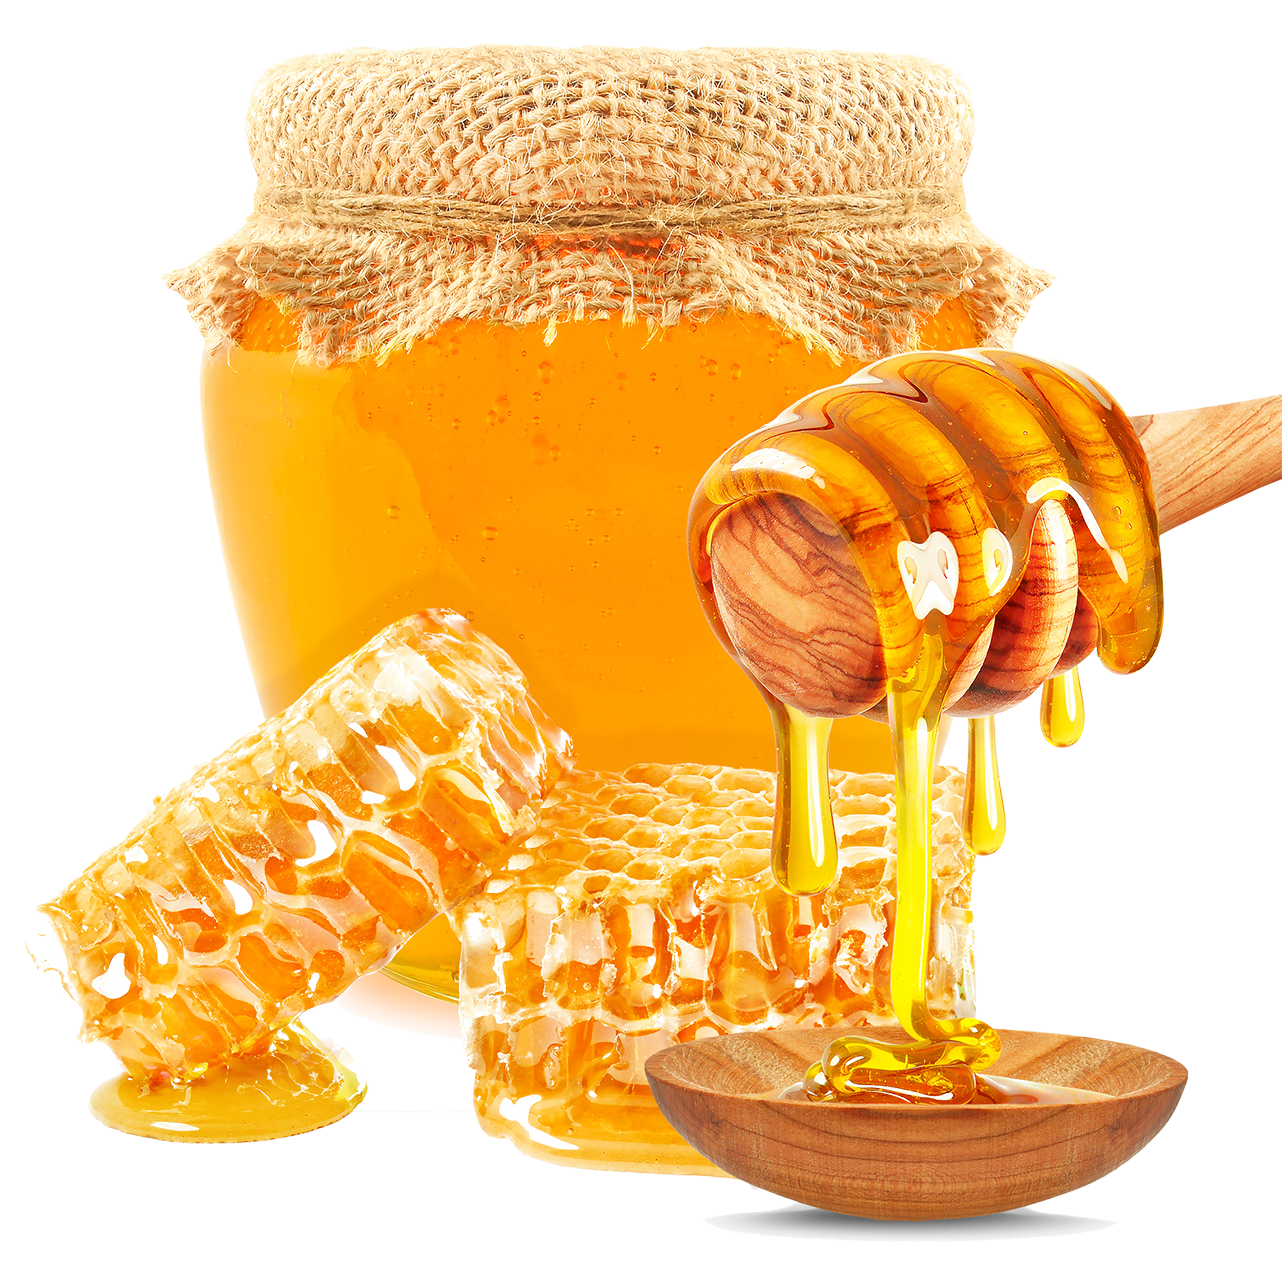 خرید عسل گون